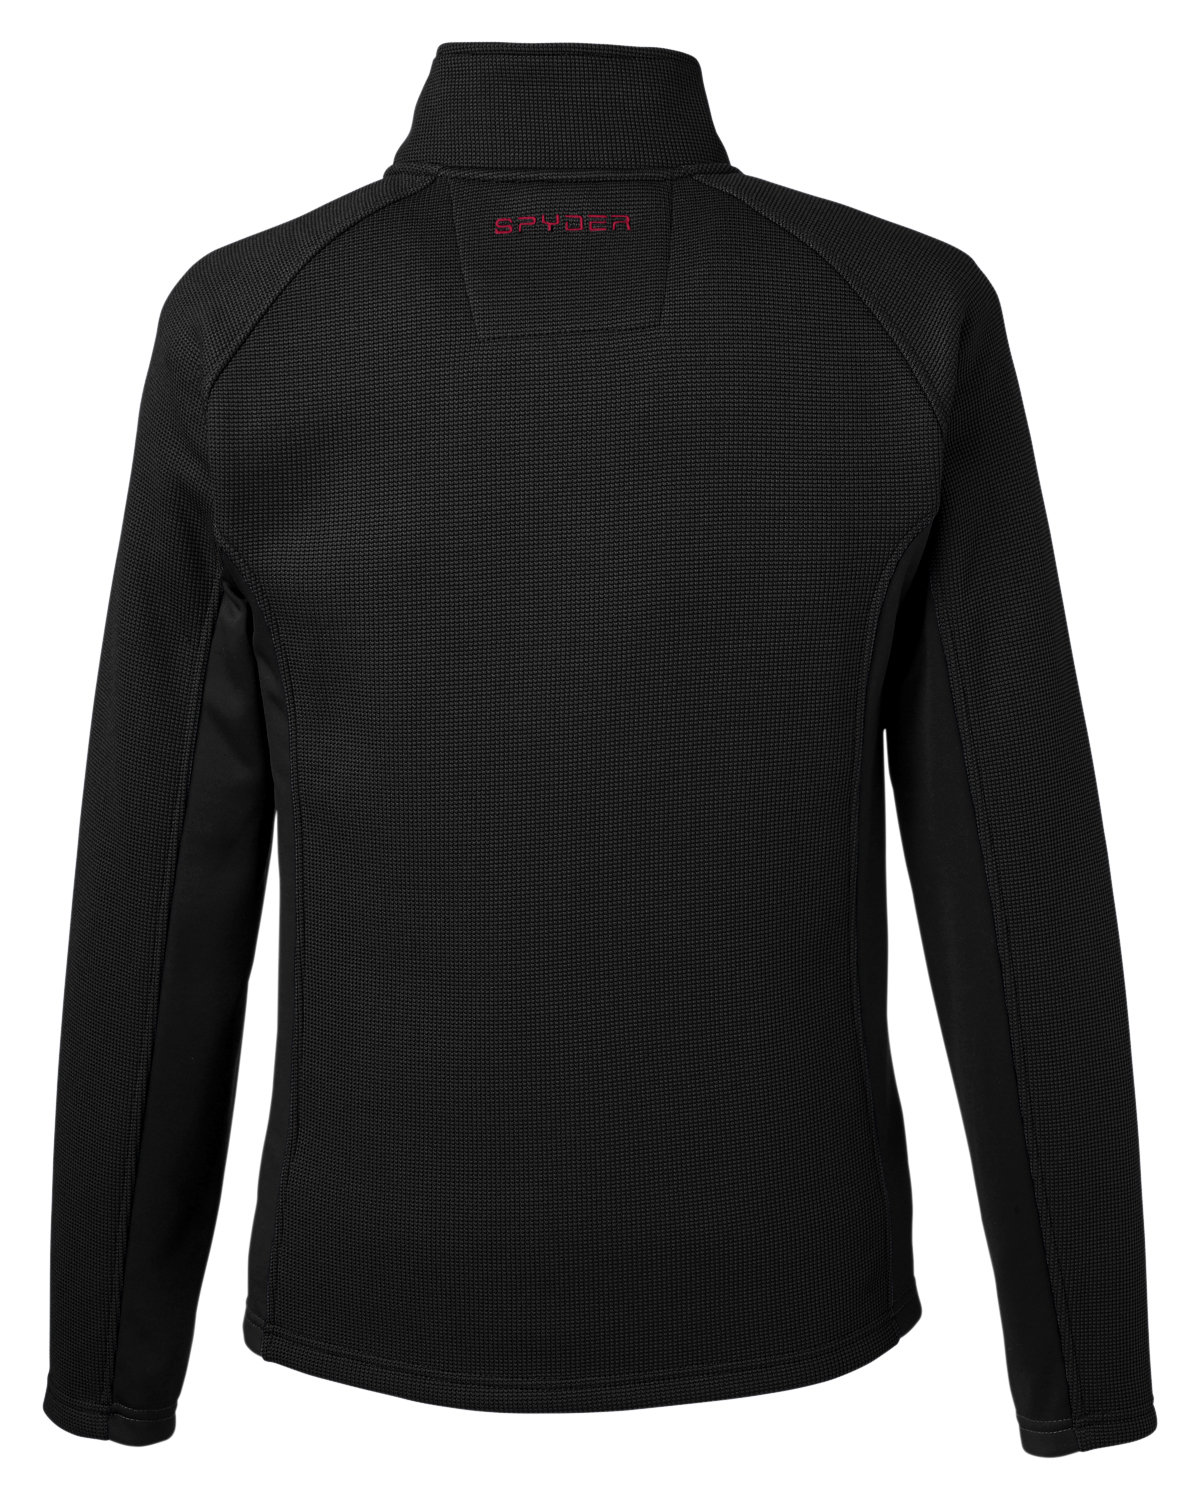 Spyder Men's Constant Full Zip Sweater Black Gameday Jacket